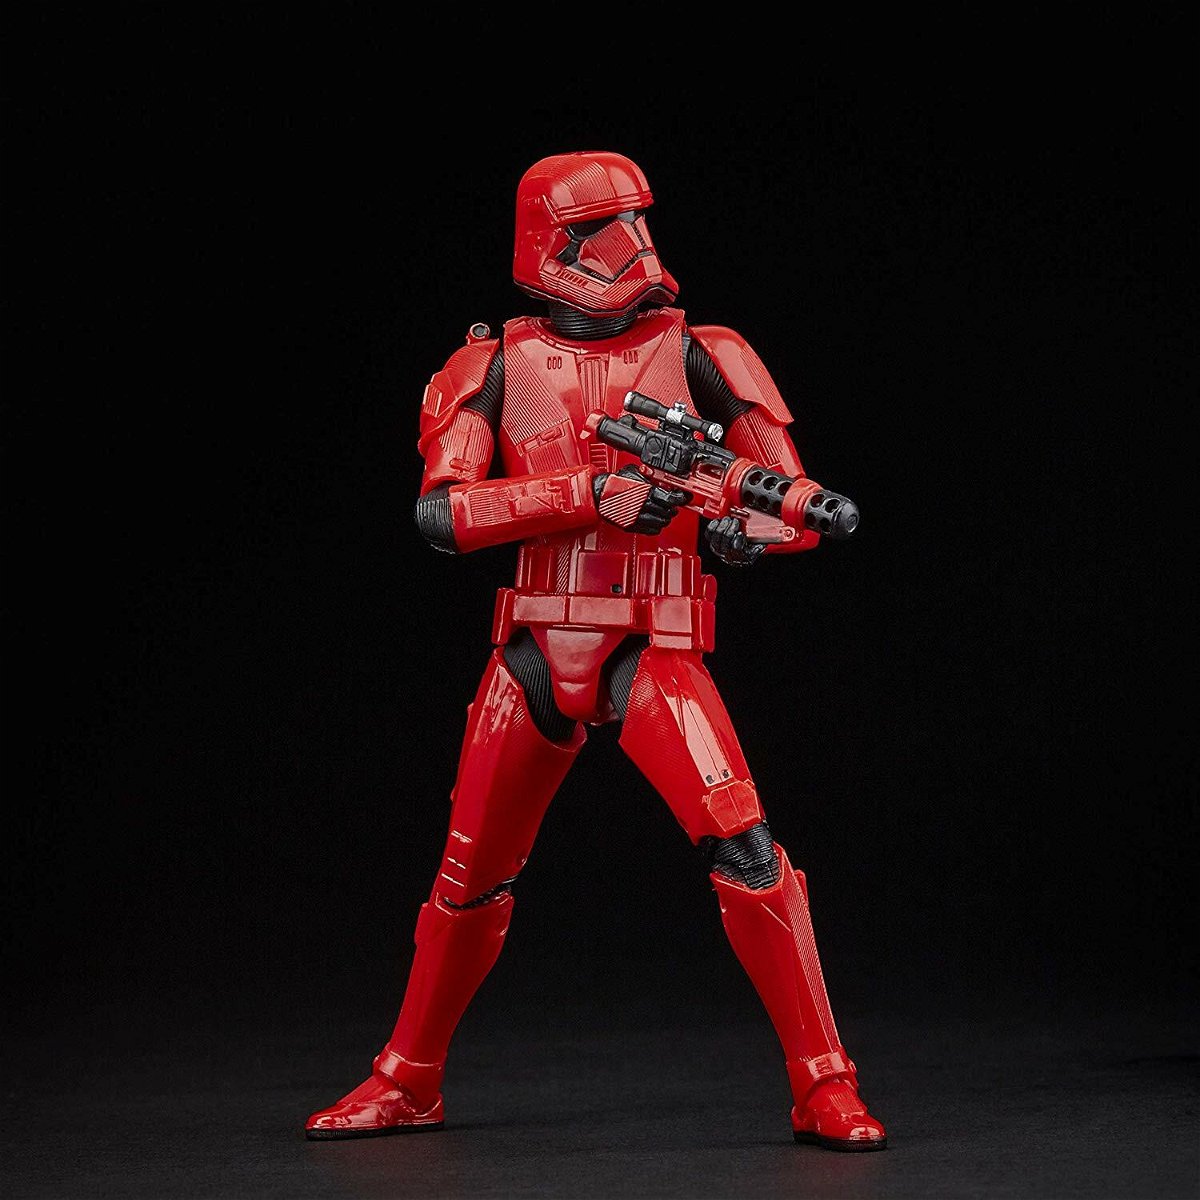 Una action figure che rappresenta il Sith Trooper pronto a sparare con il suo fucile